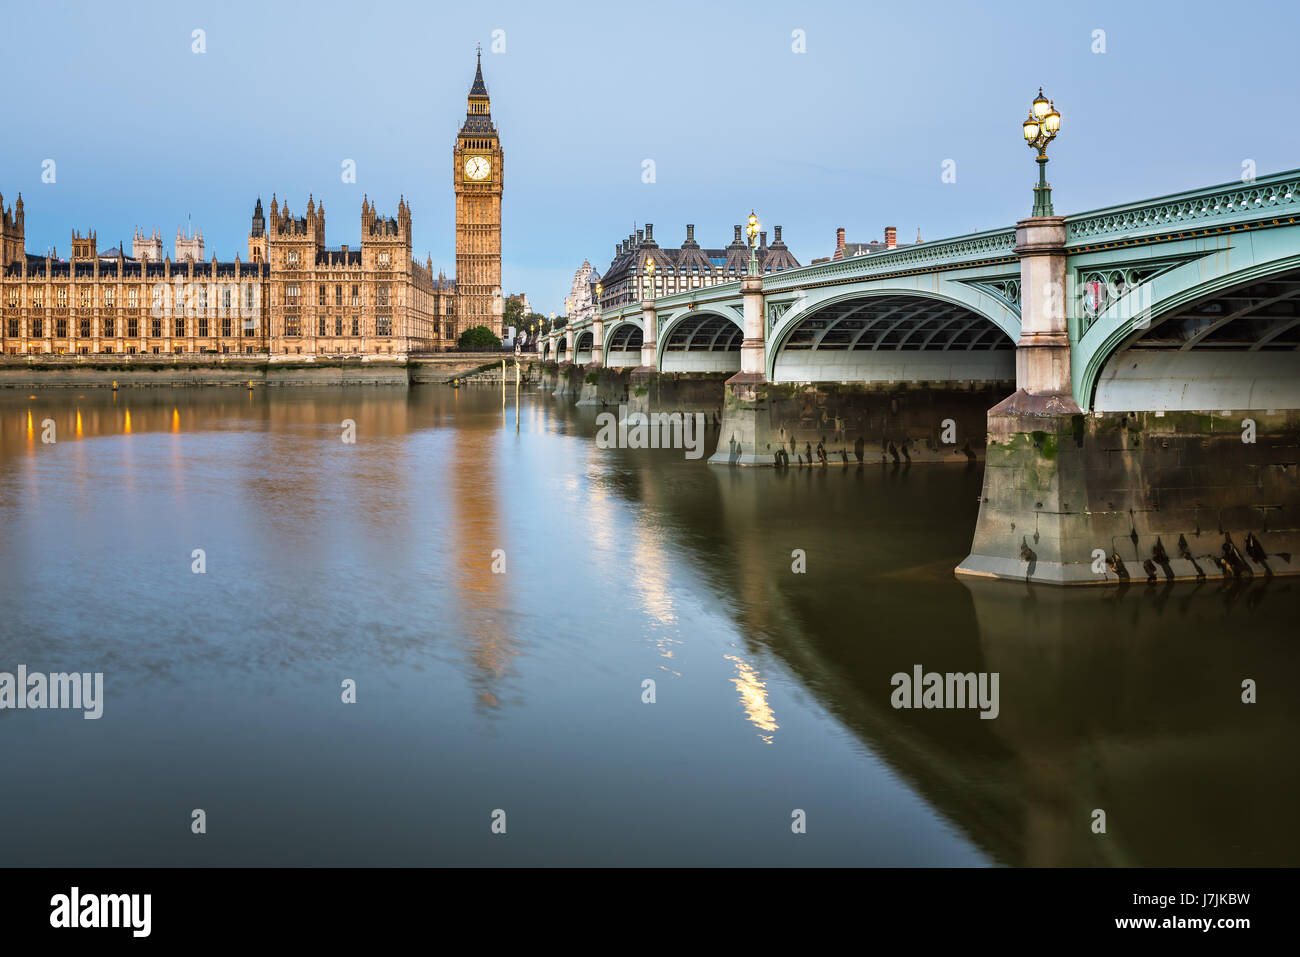 Big Ben, Queen Elizabeth Tower e Westminster Bridge illuminato al mattino, London, Regno Unito Foto Stock